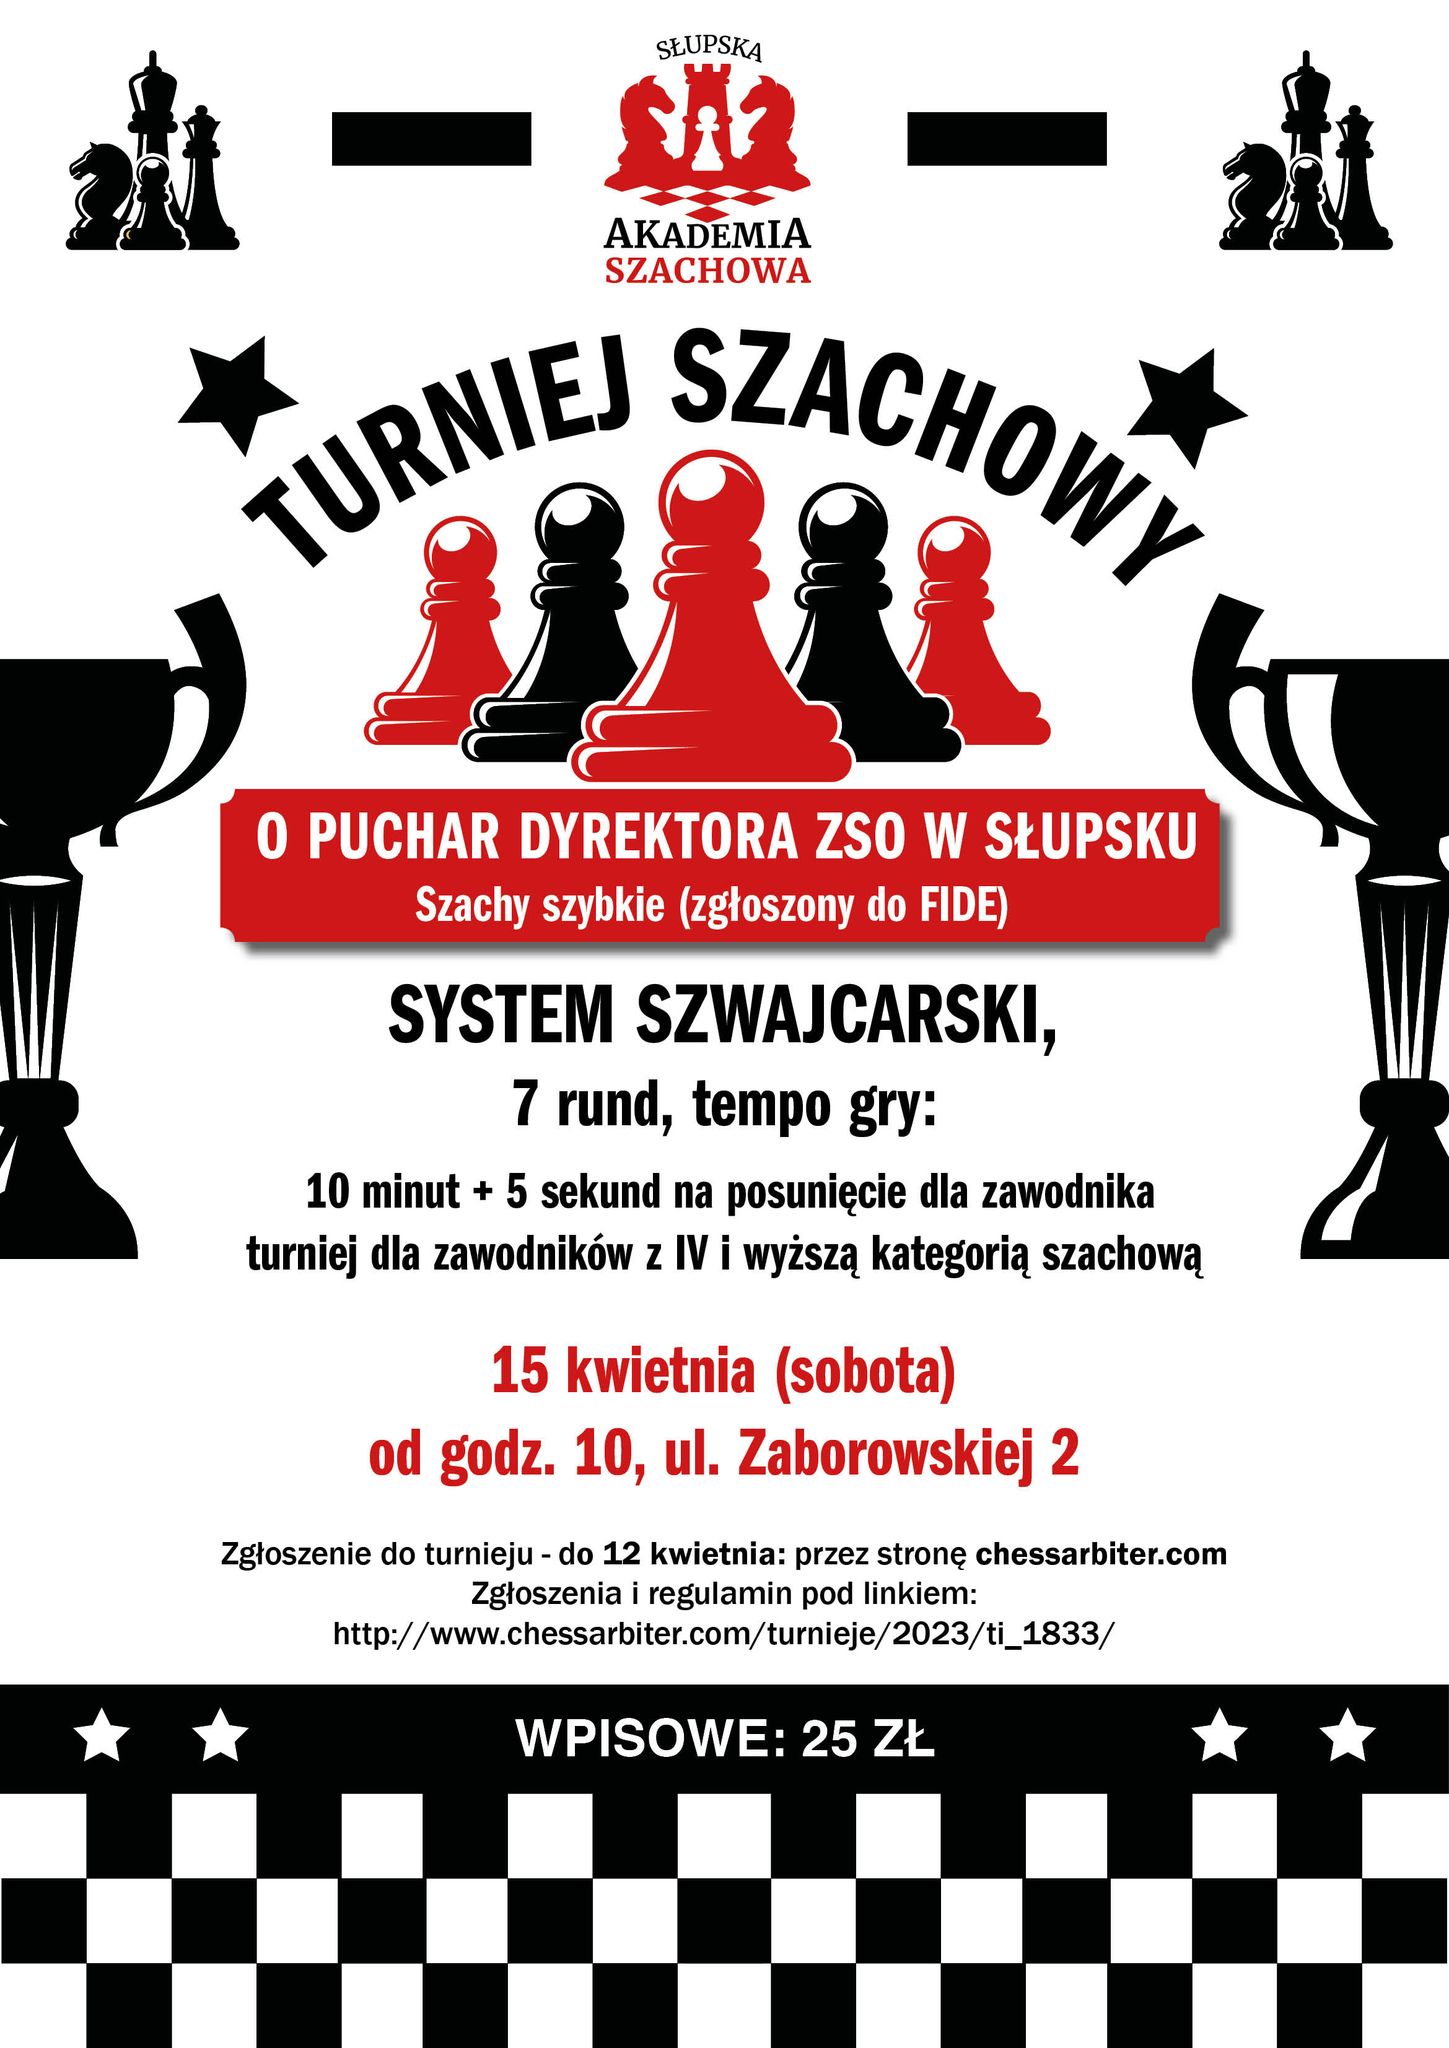 Puchar Dyrektora ZSO - informacje na plakacie z grafiką figur szachowych poniżej w artykule